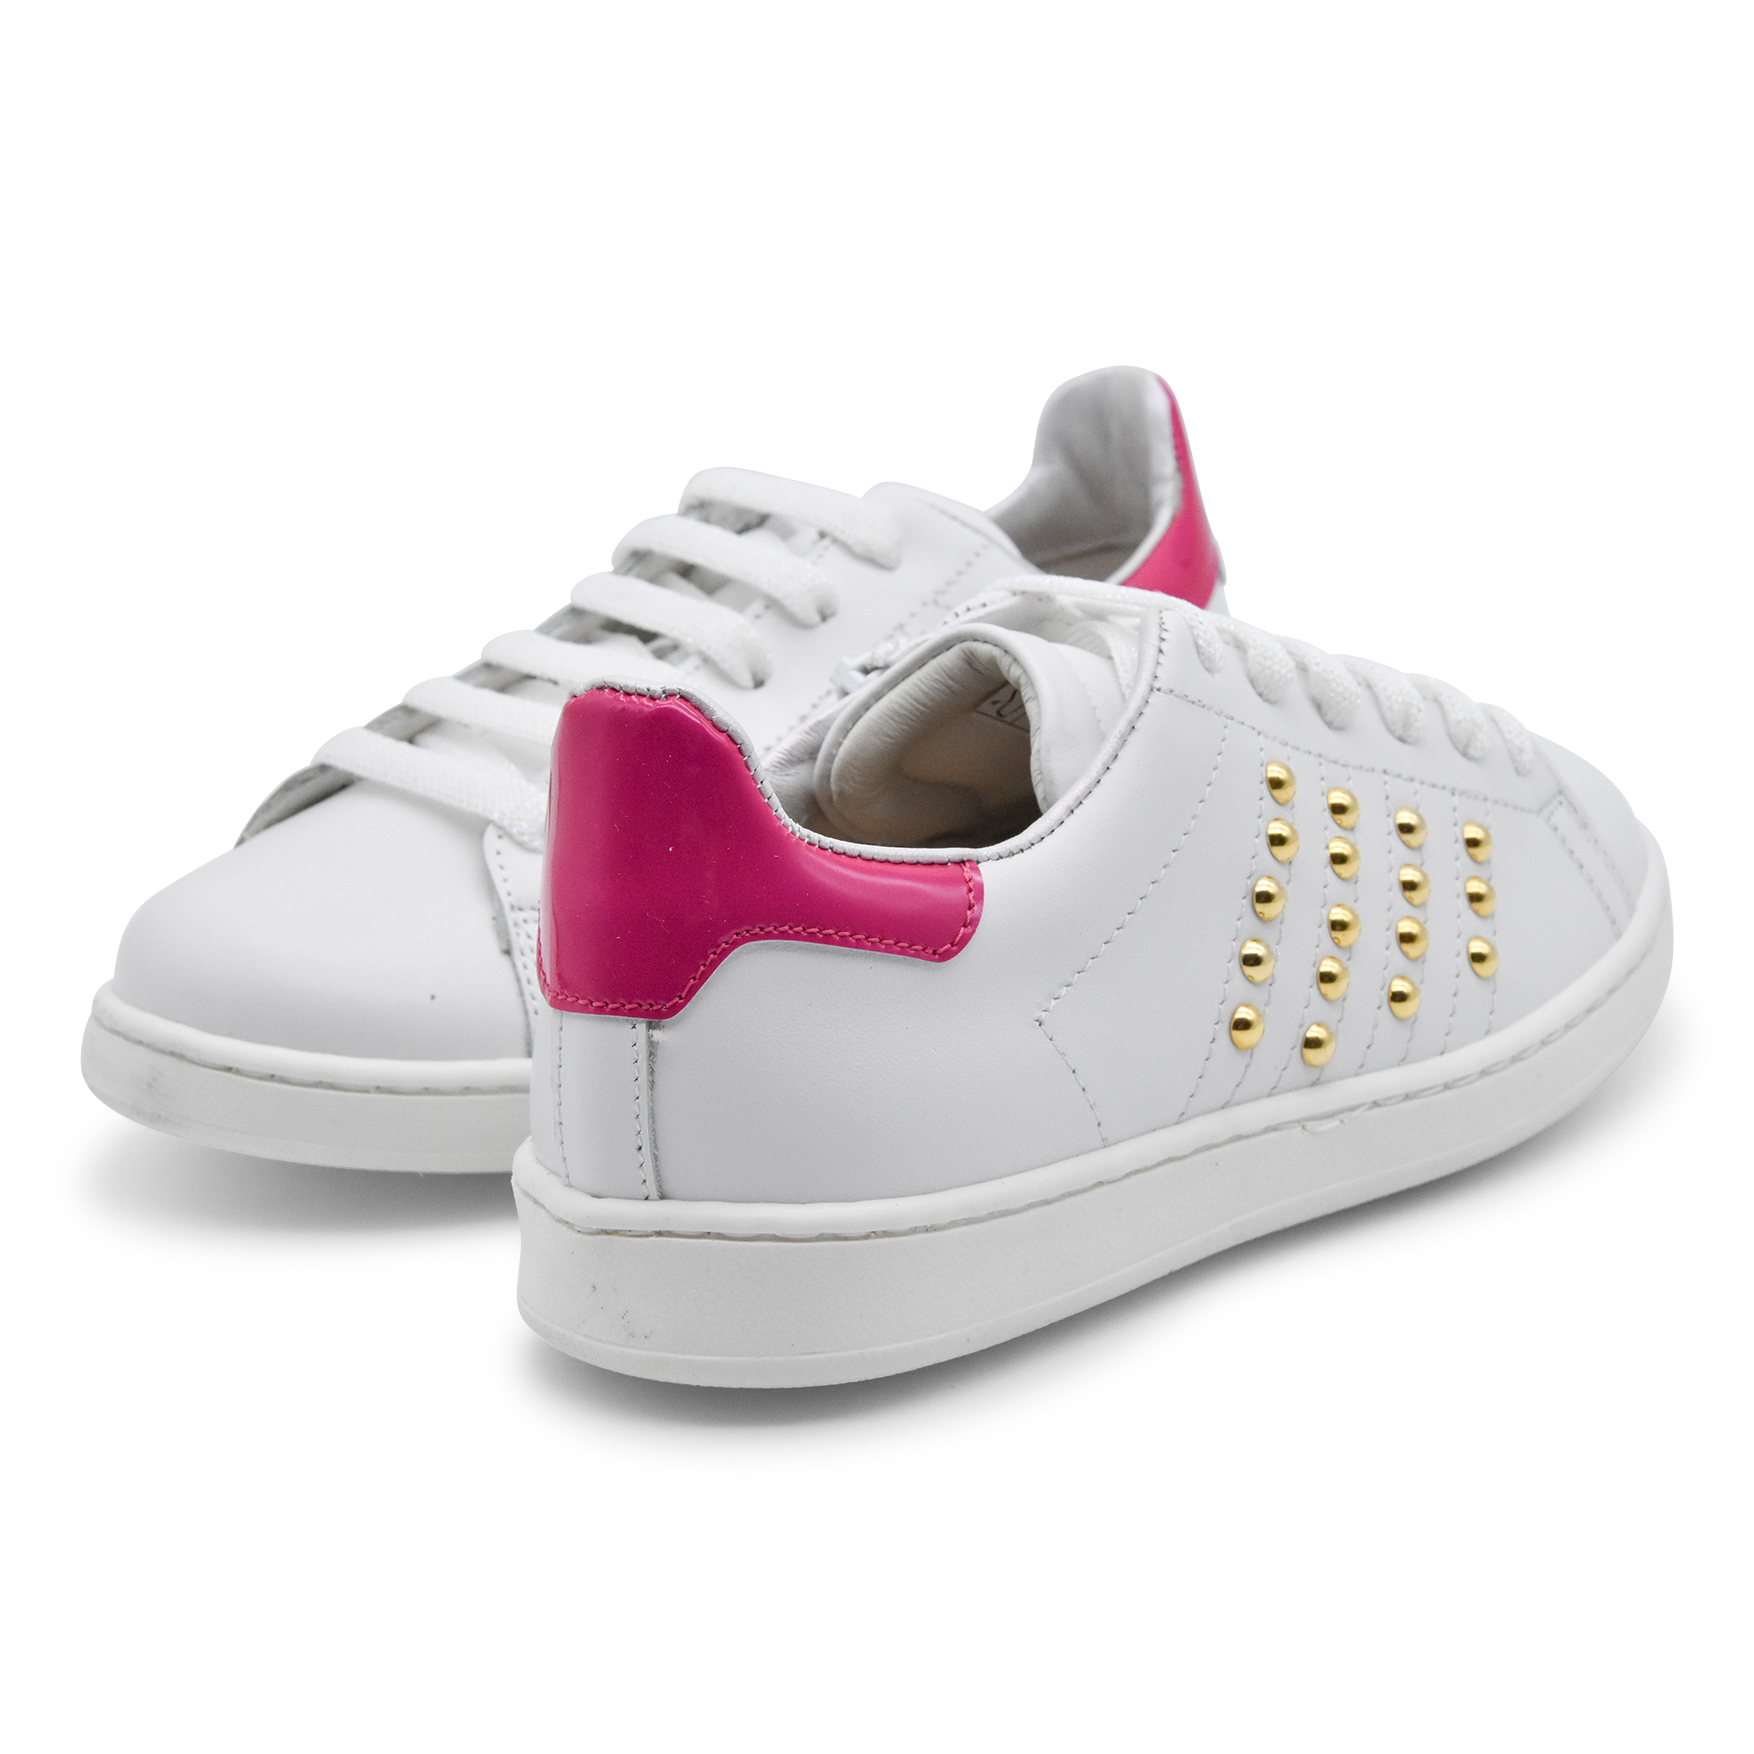 Zecchino D'oro sneakers, made in Italy, pelle, lacci, zip, rosa, fucsia, fuxia, bianco, oro, retro